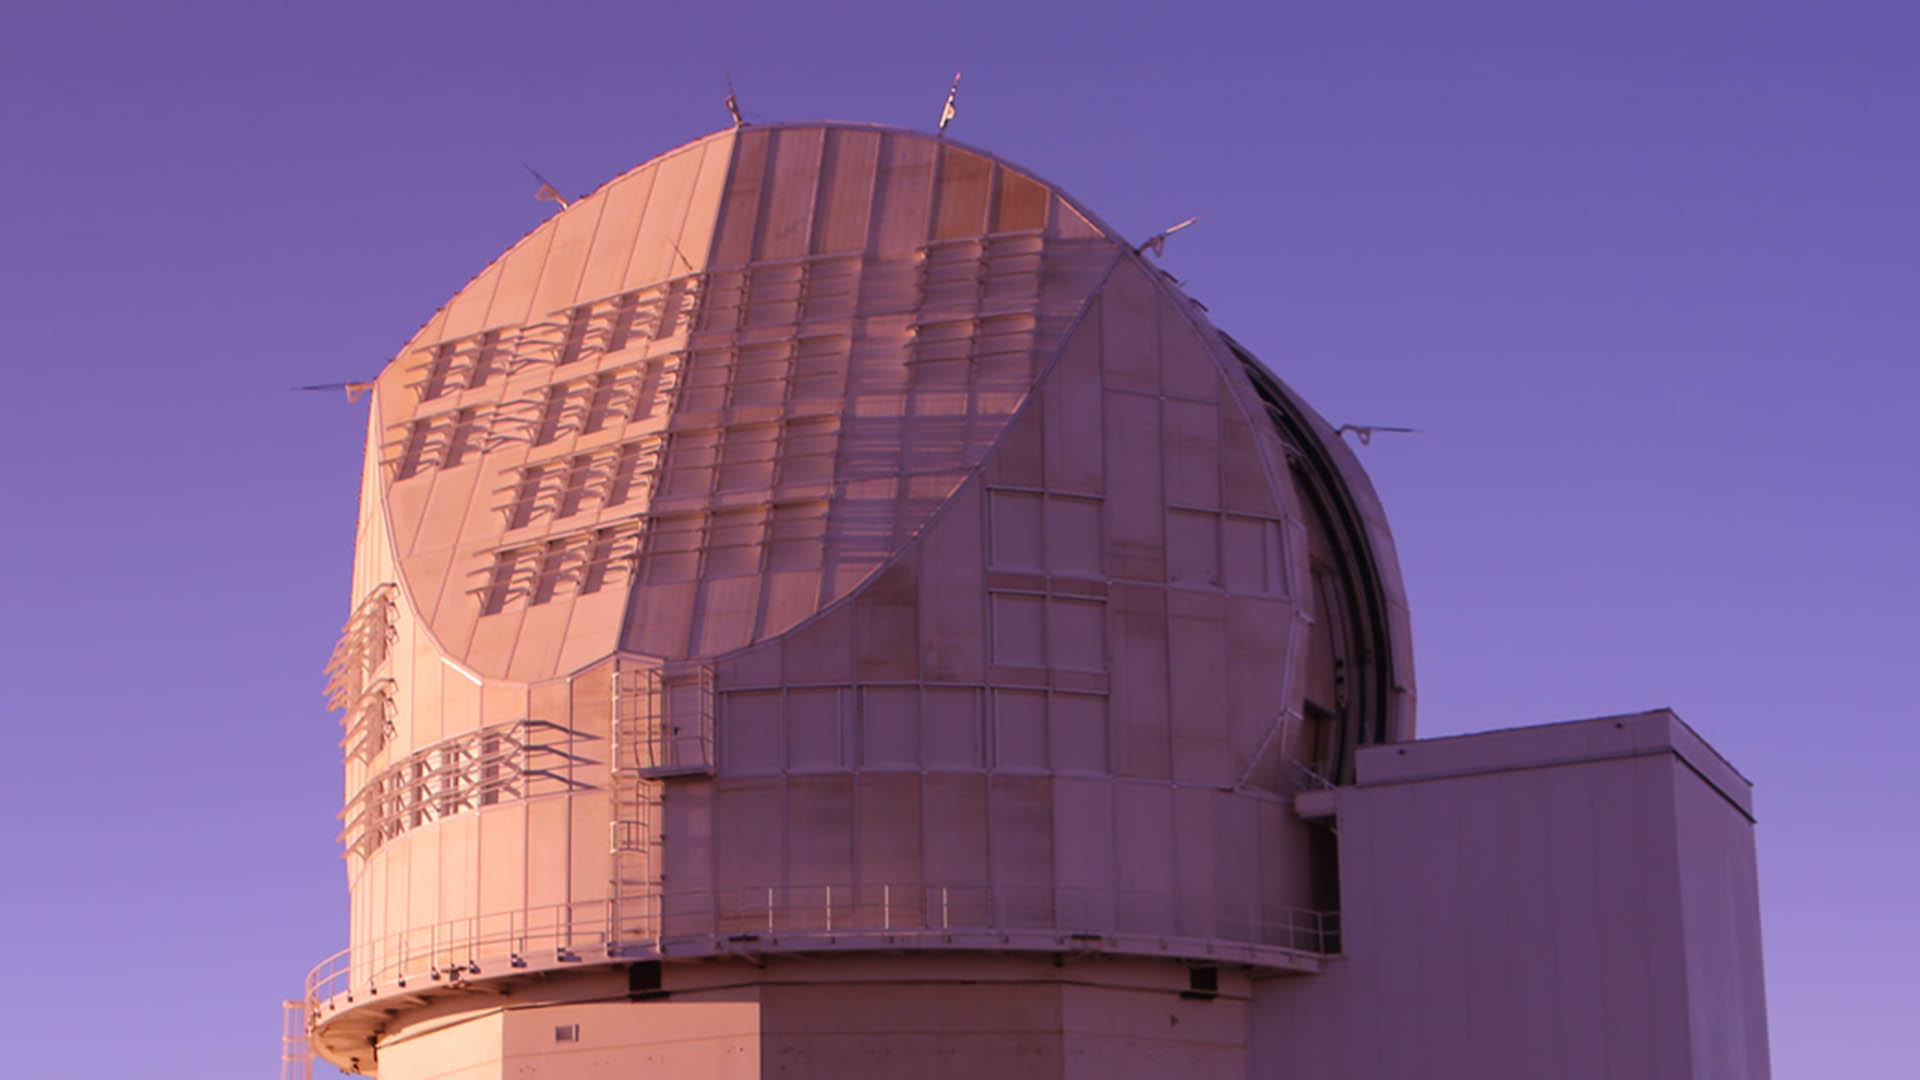 El Observatorio Solar Sunspot reabre sus puertas tras cerrar en circunstancias misteriosas